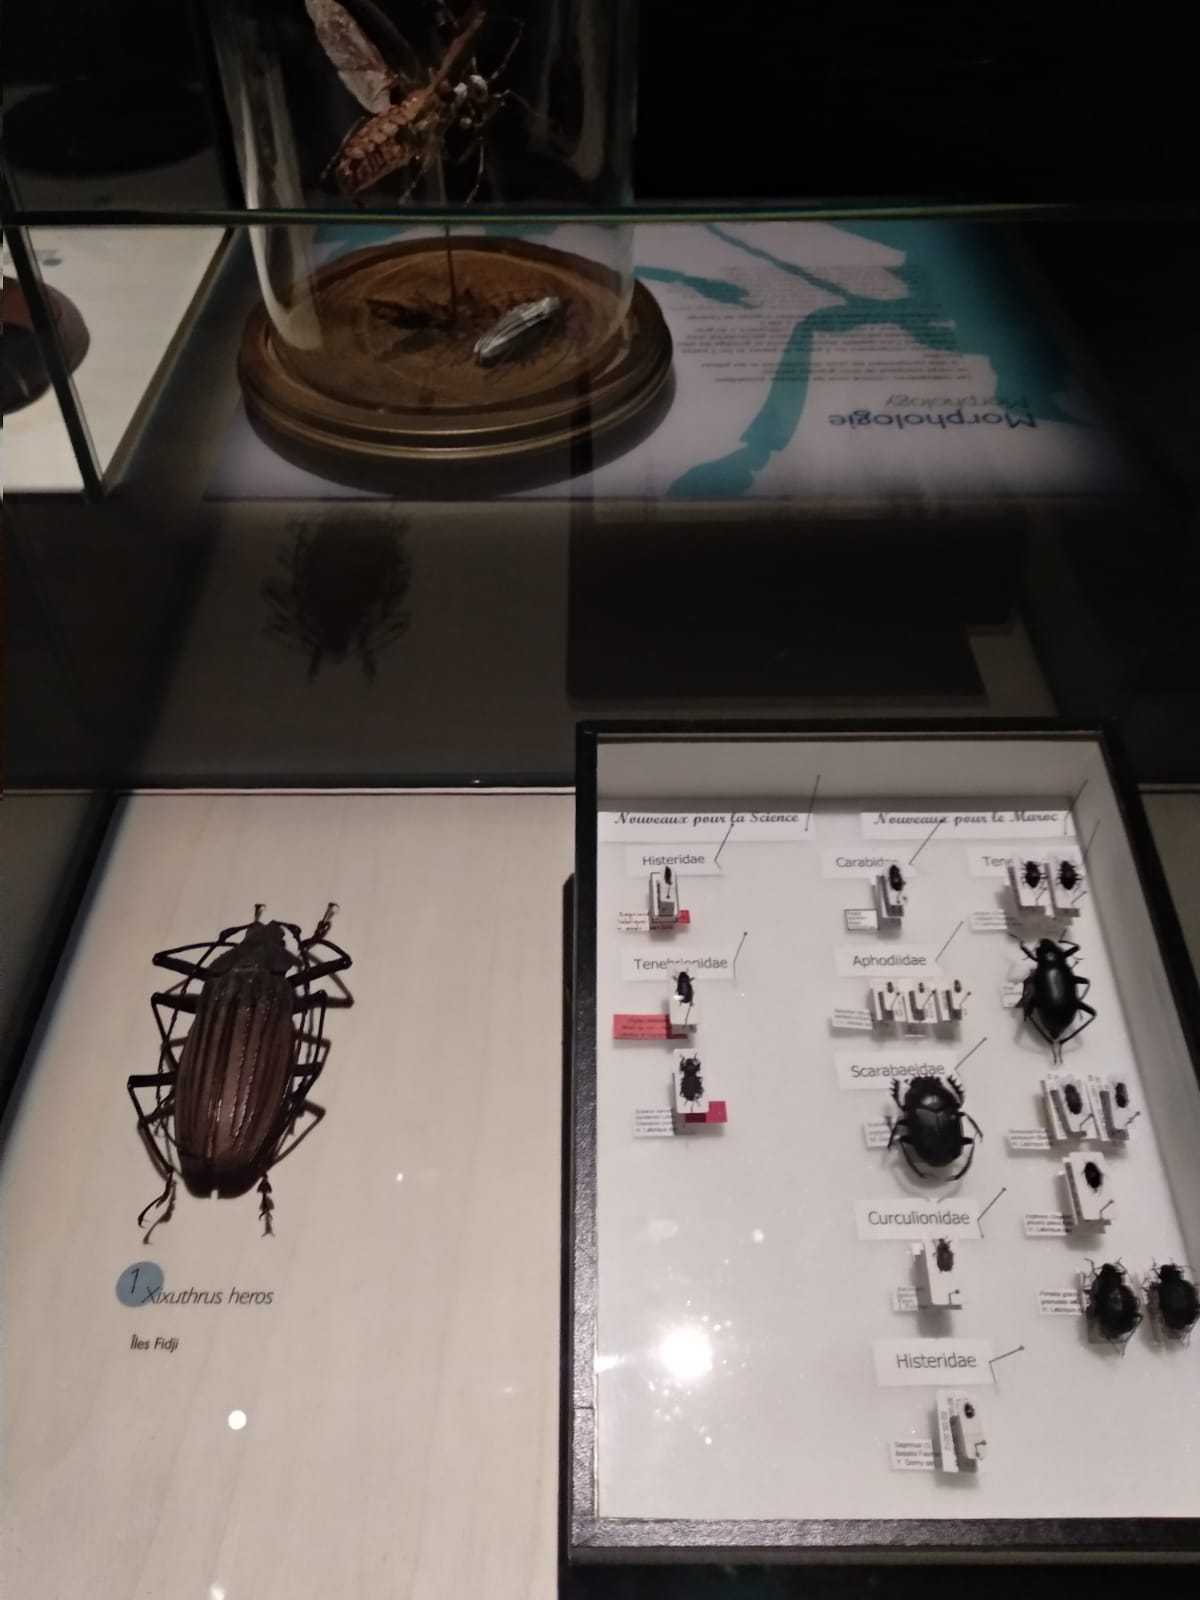 Exhibition, Coléoptères, insectes extraordinaires, Musée des Confluences, Lyon: 21 December 2018-28 June 2020